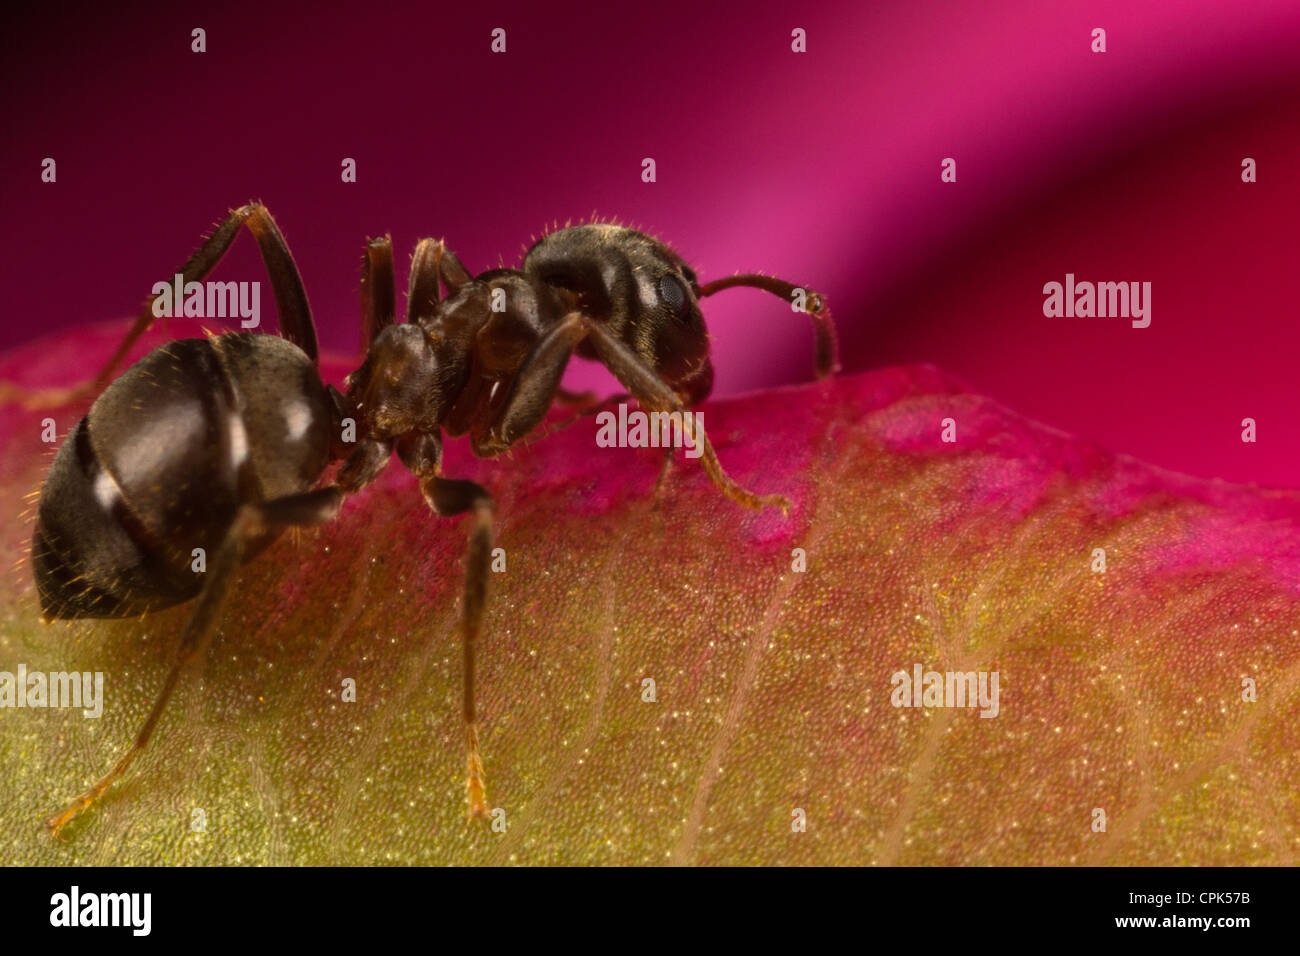 Ant Stock Photo